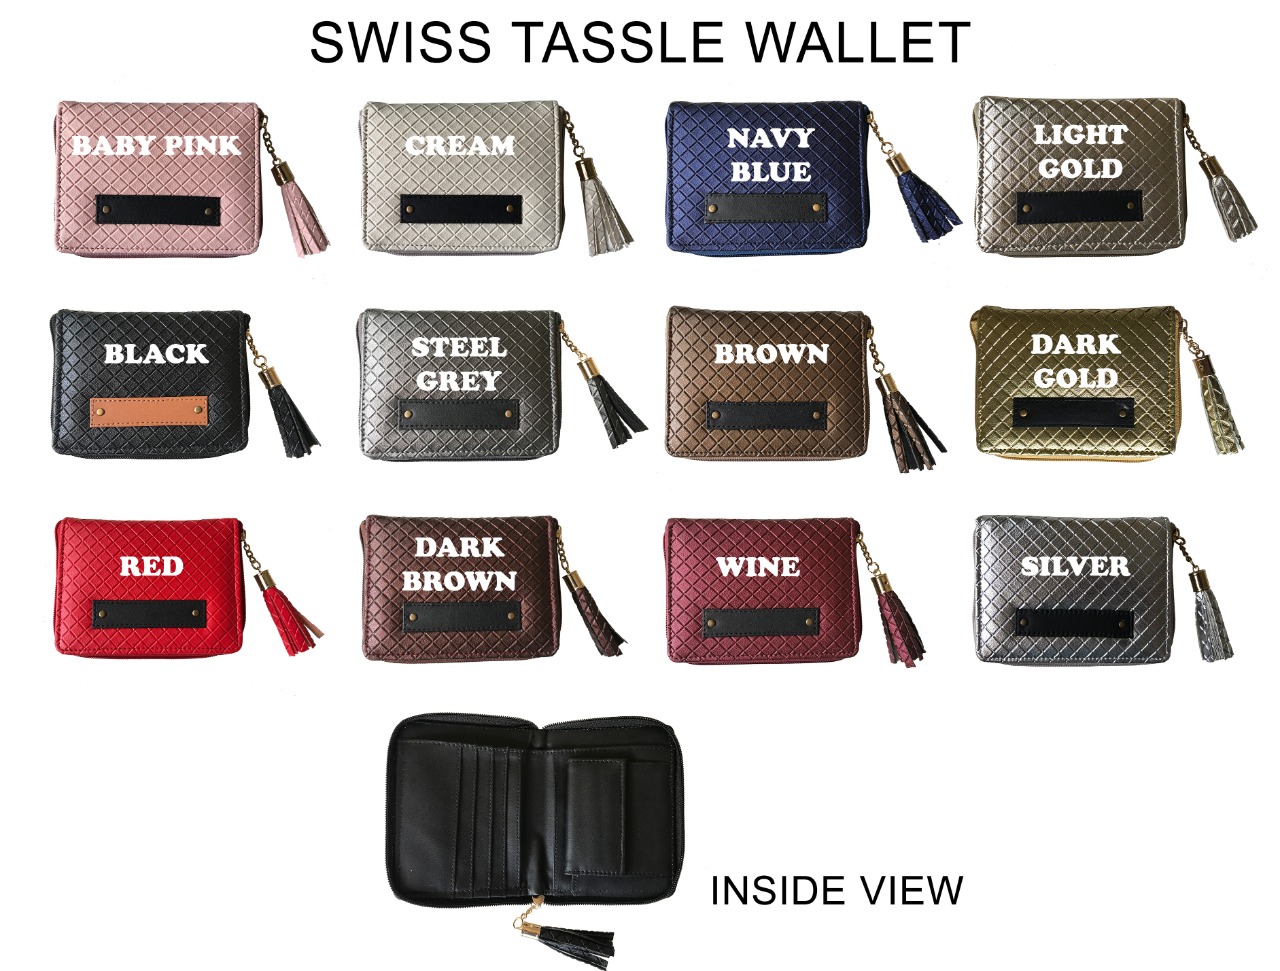 Swiss Tassle Wallet